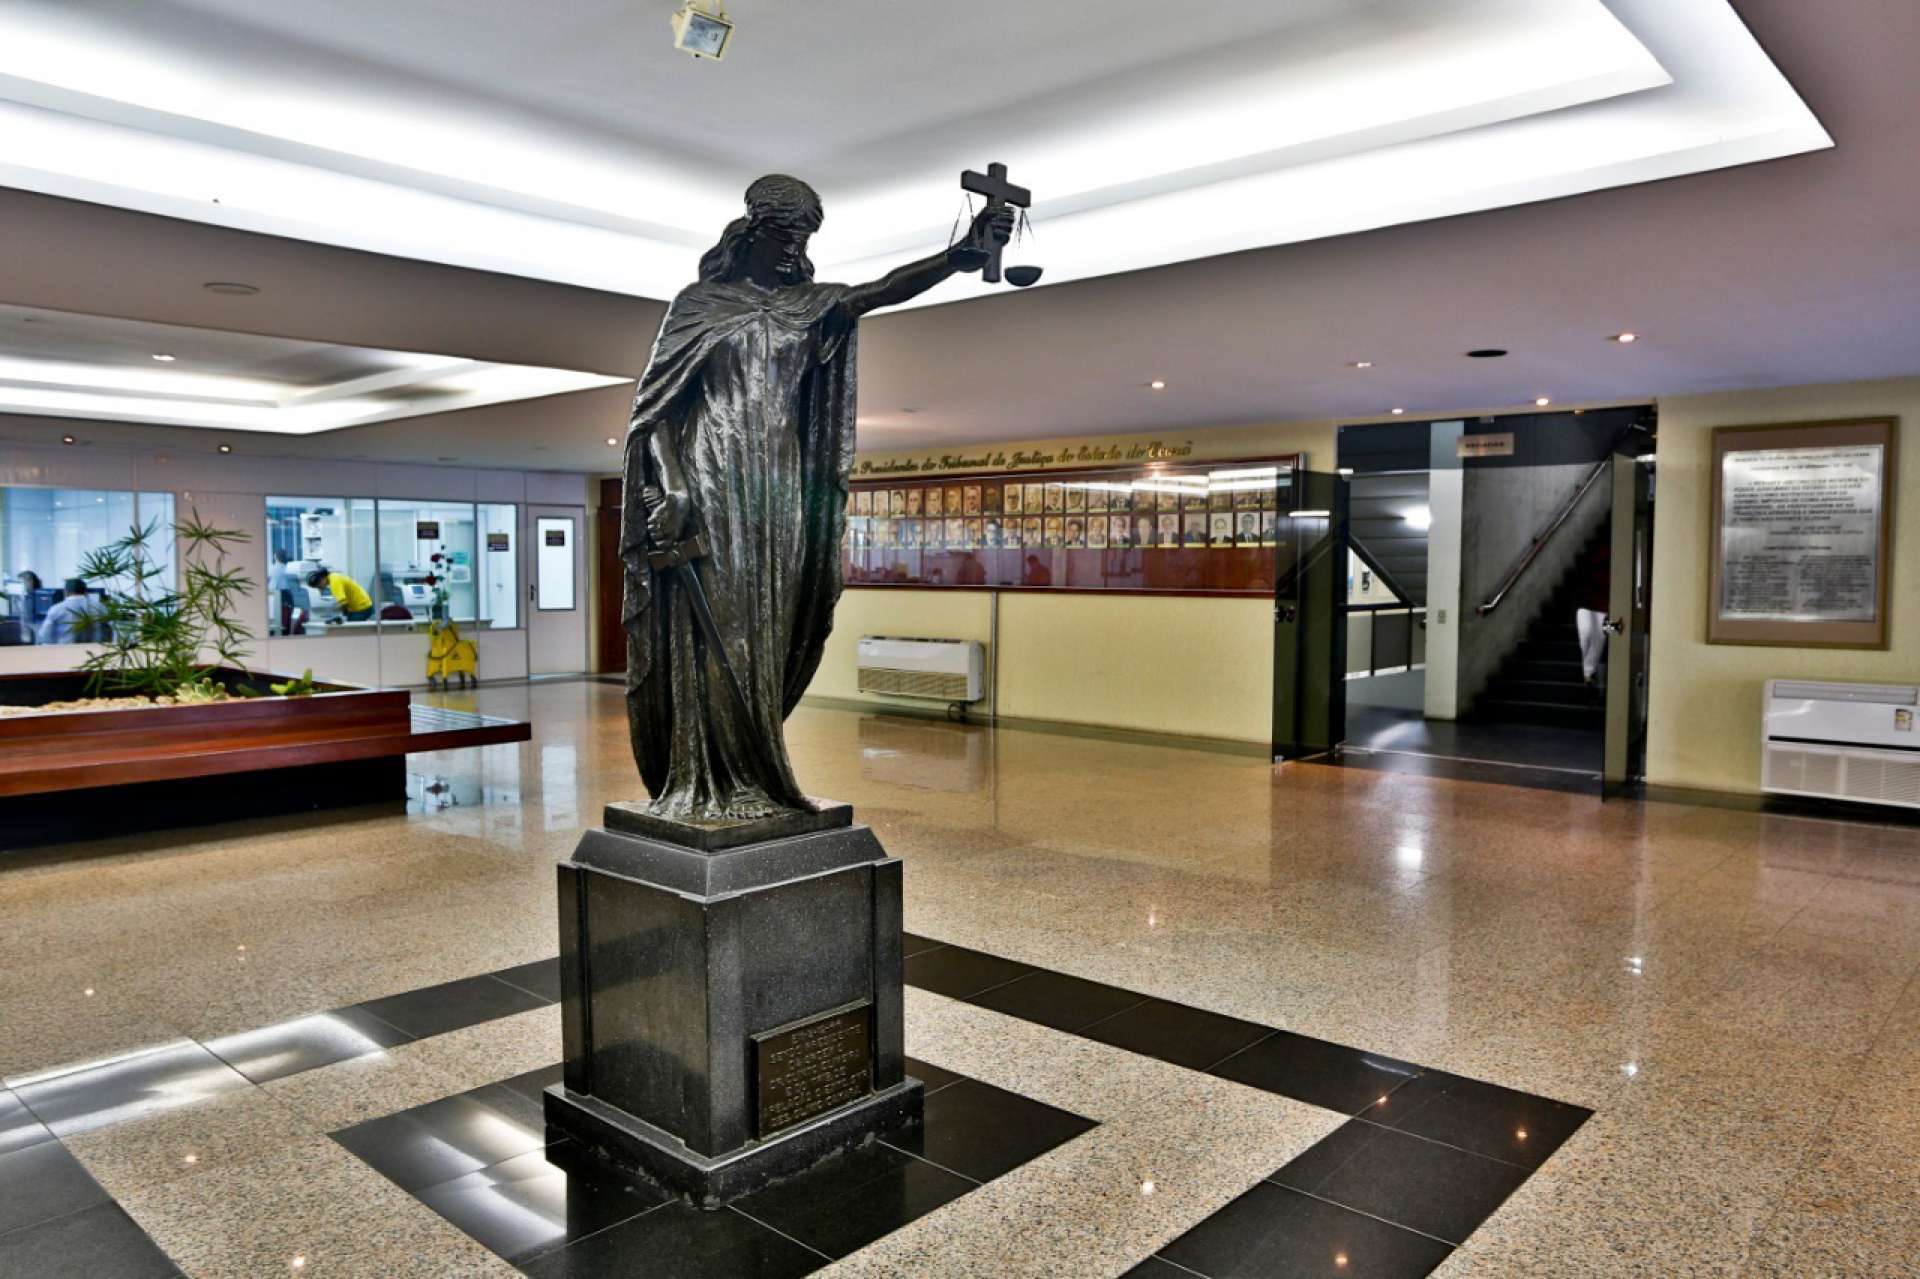 Estátua de Themis, a deusa da Justiça, no saguão de entrada do Tribunal de Justiça do Ceará (Foto: FCO FONTENELE)